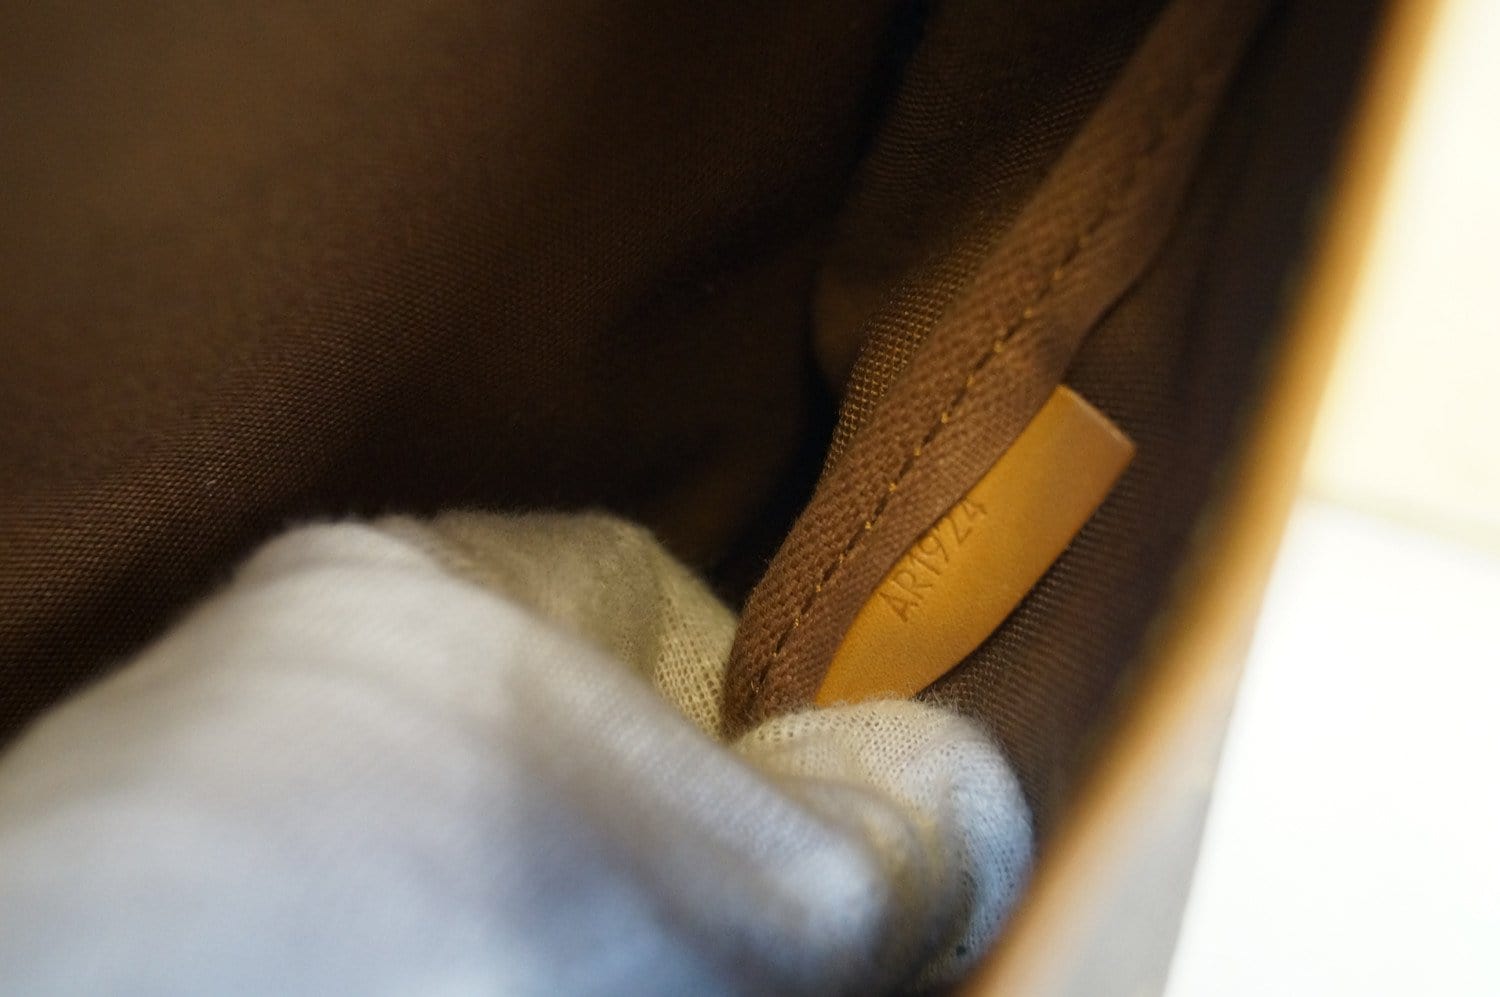 Louis Vuitton Monogram Saumur 35 - Brown Crossbody Bags, Handbags -  LOU810508